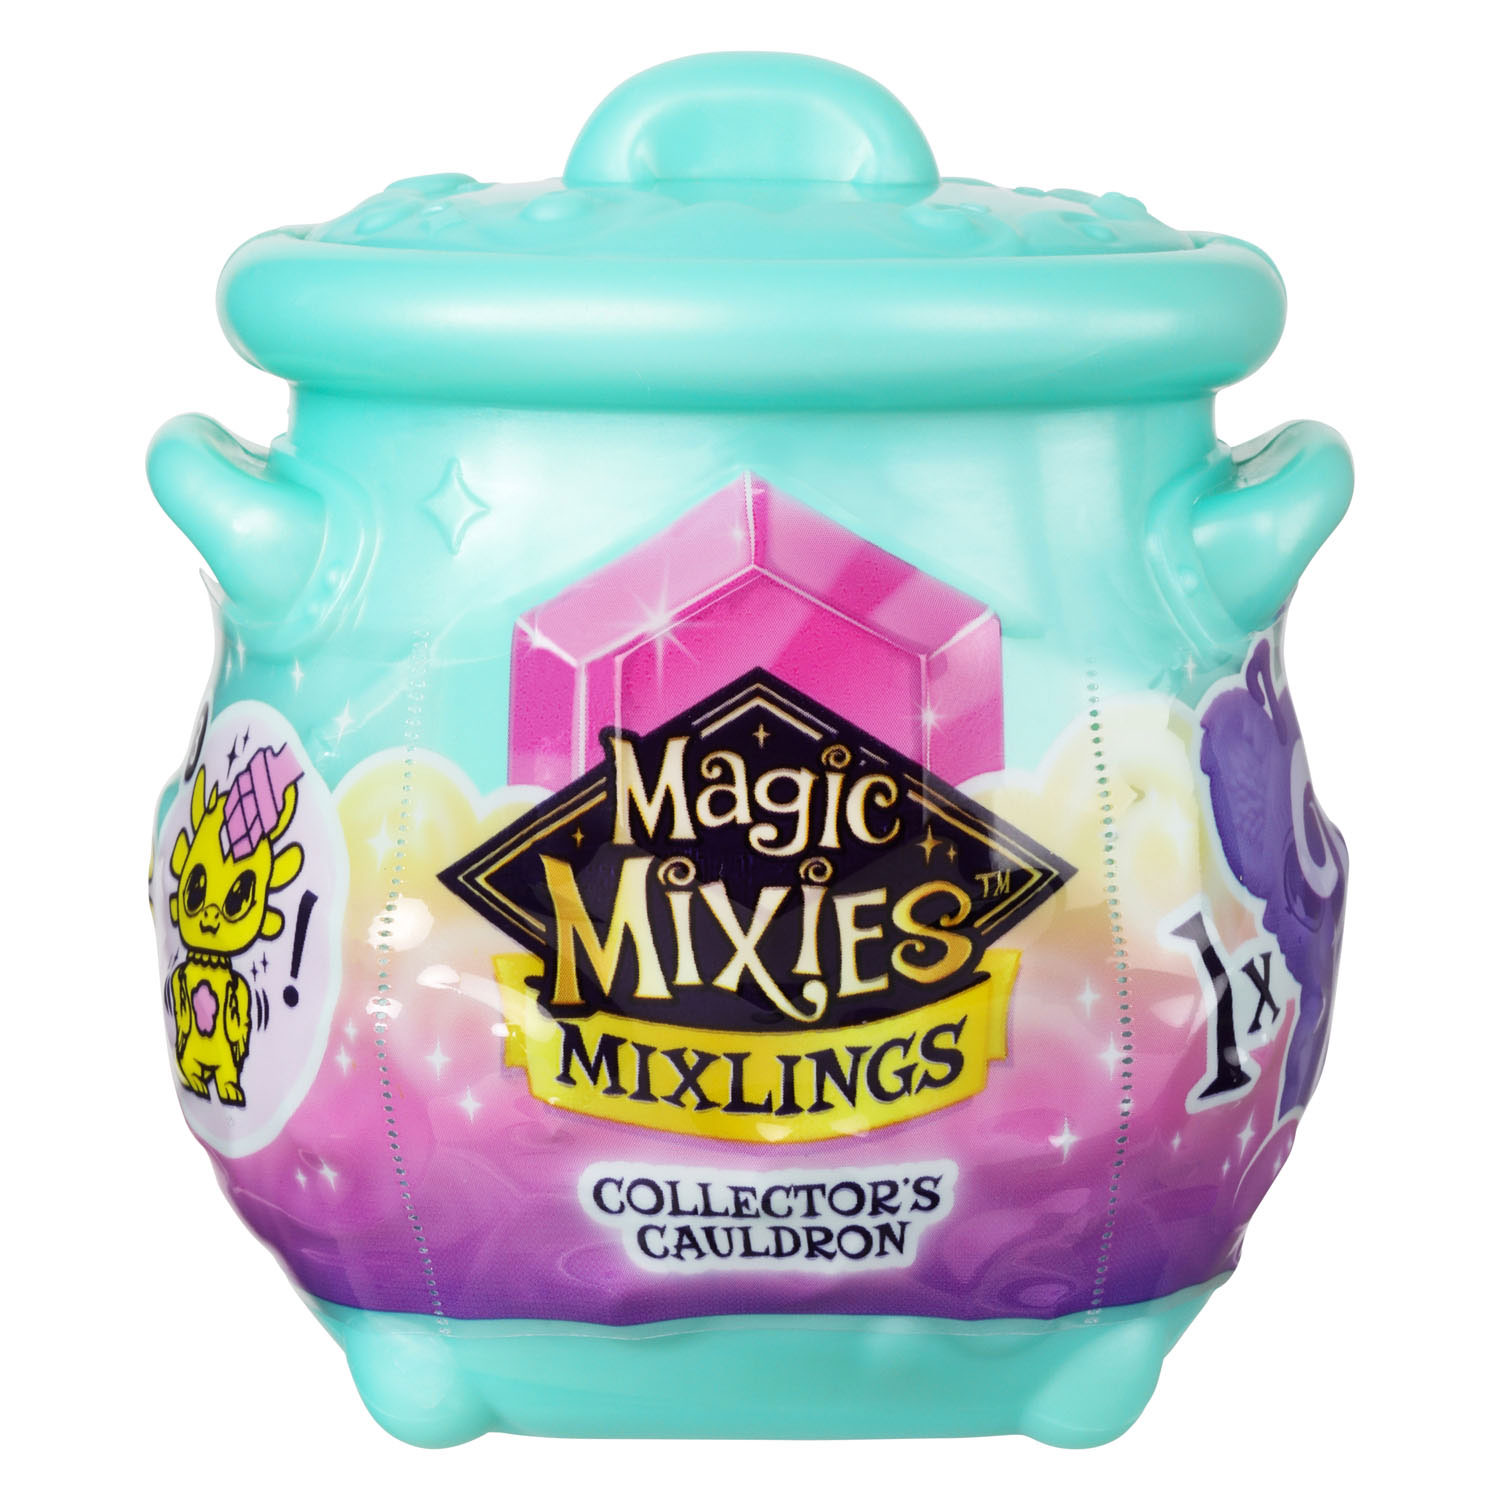 Magix Mixies Mixlings Collection Bouilloire Série 2